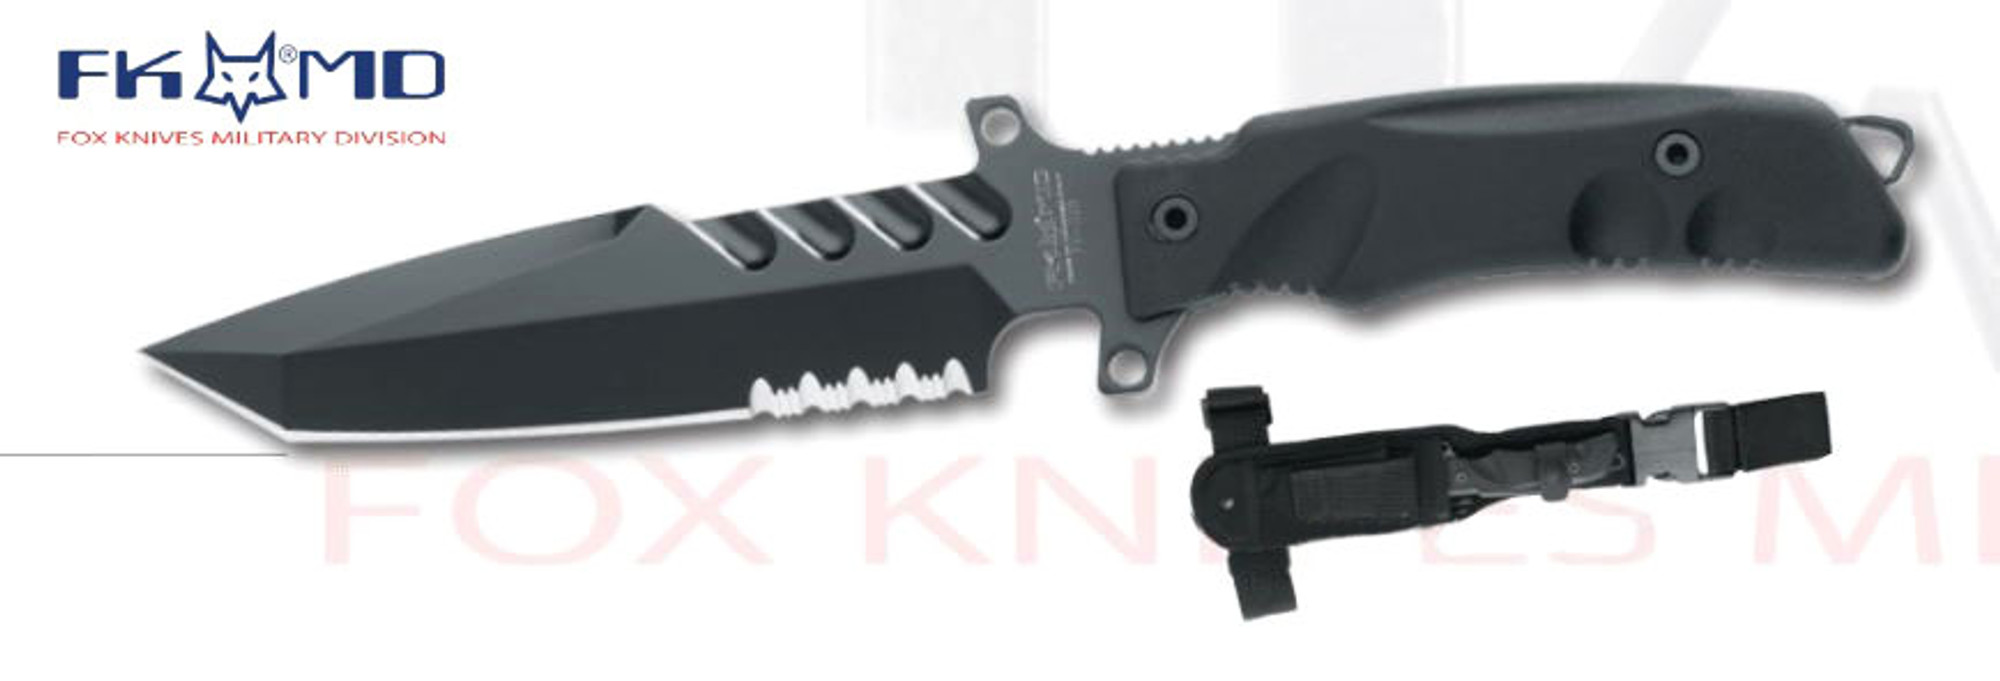 Fox Italy FKMD Fighting Utility Knife FXG2B, N690